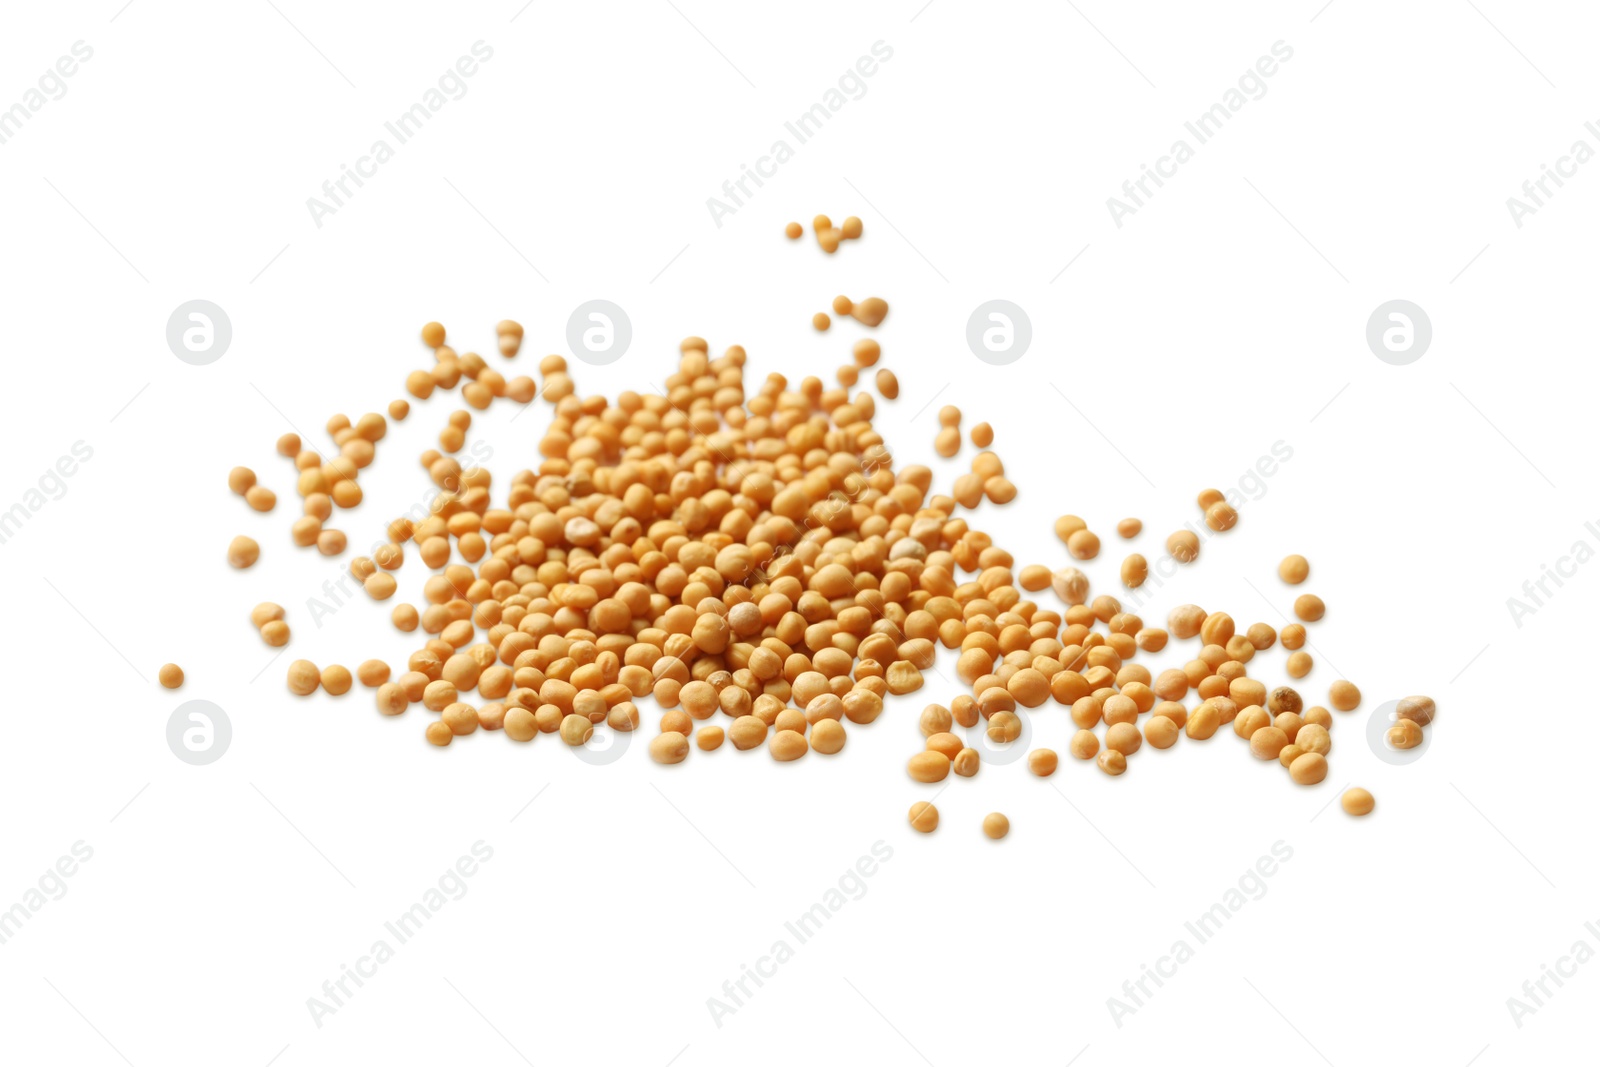 Photo of Many whole mustard seeds on white background